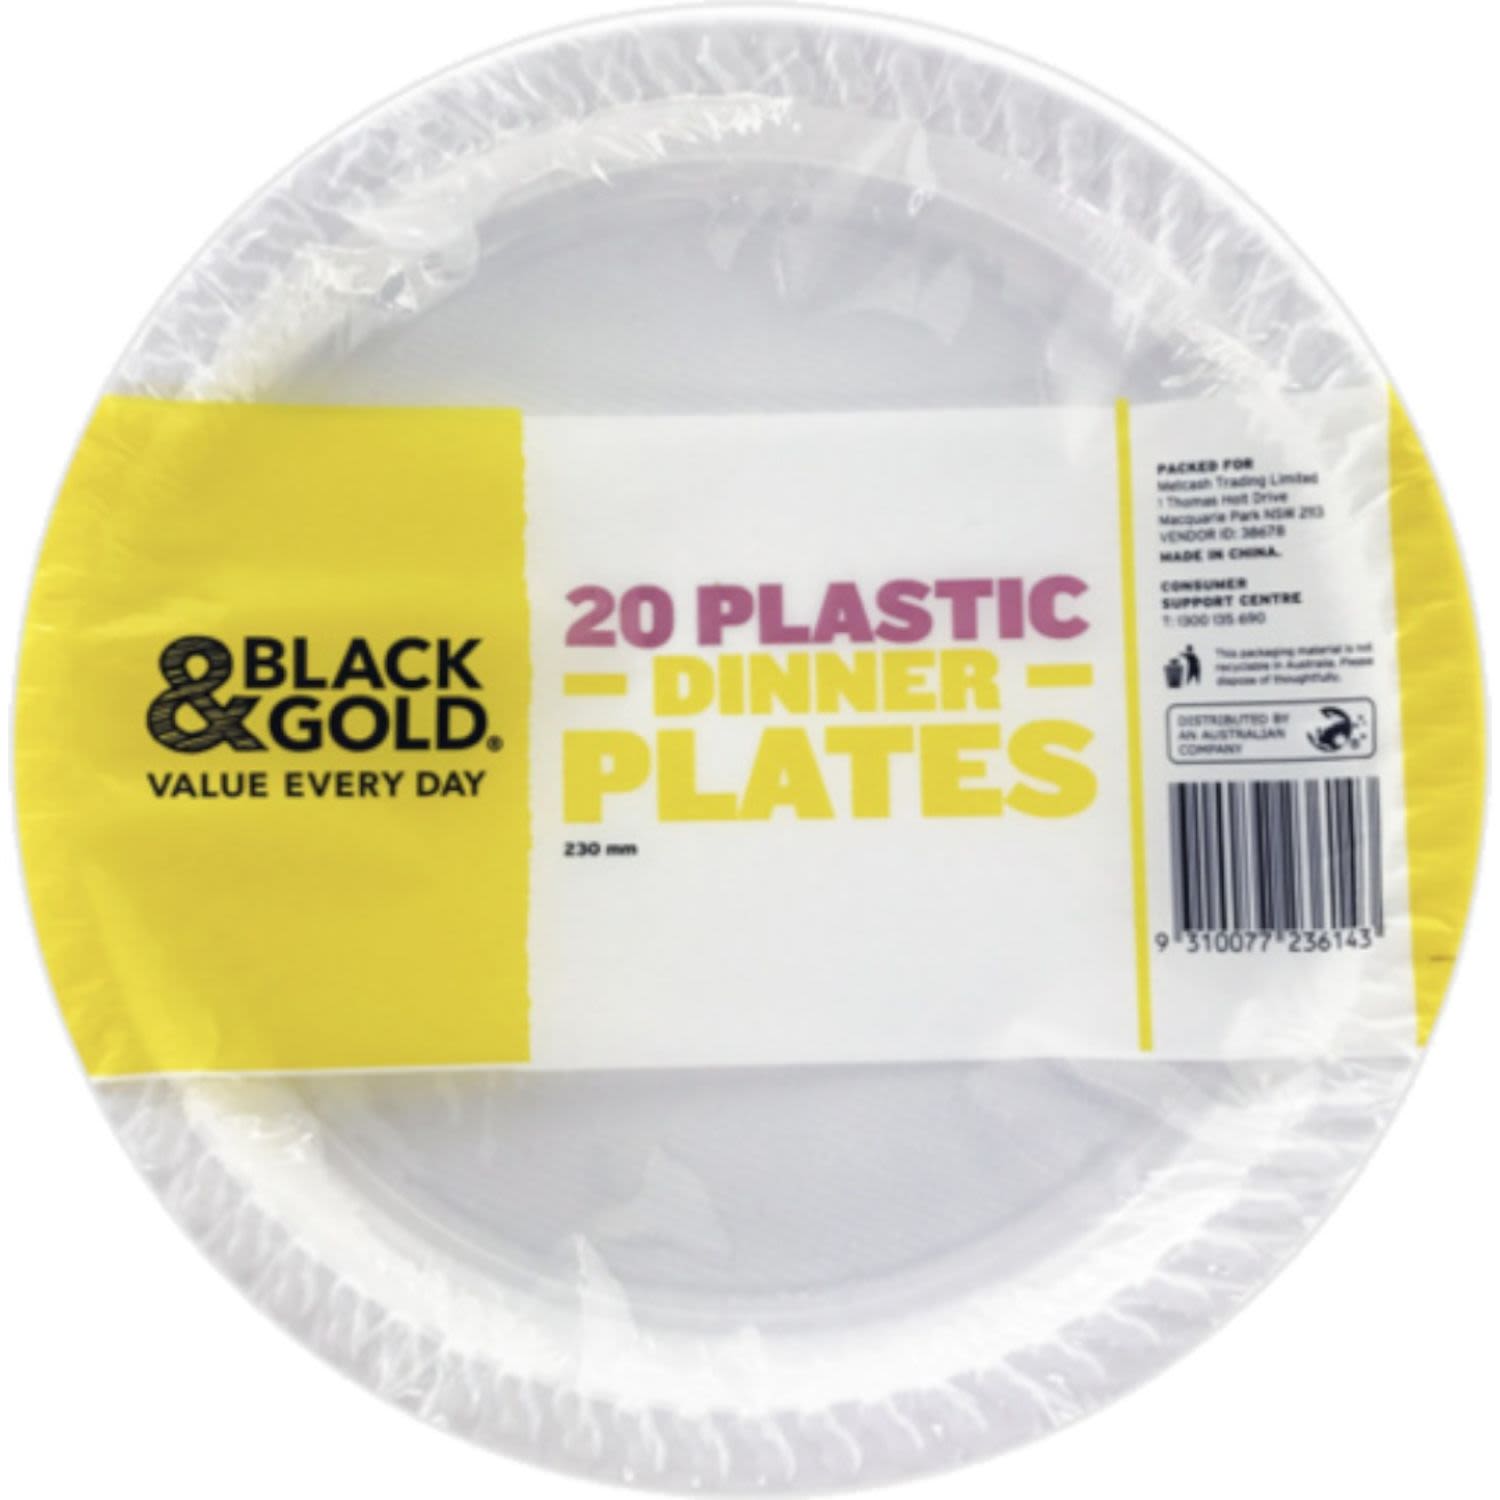 Black & Gold Plastic Dinner Plate 230mm, 20 Each